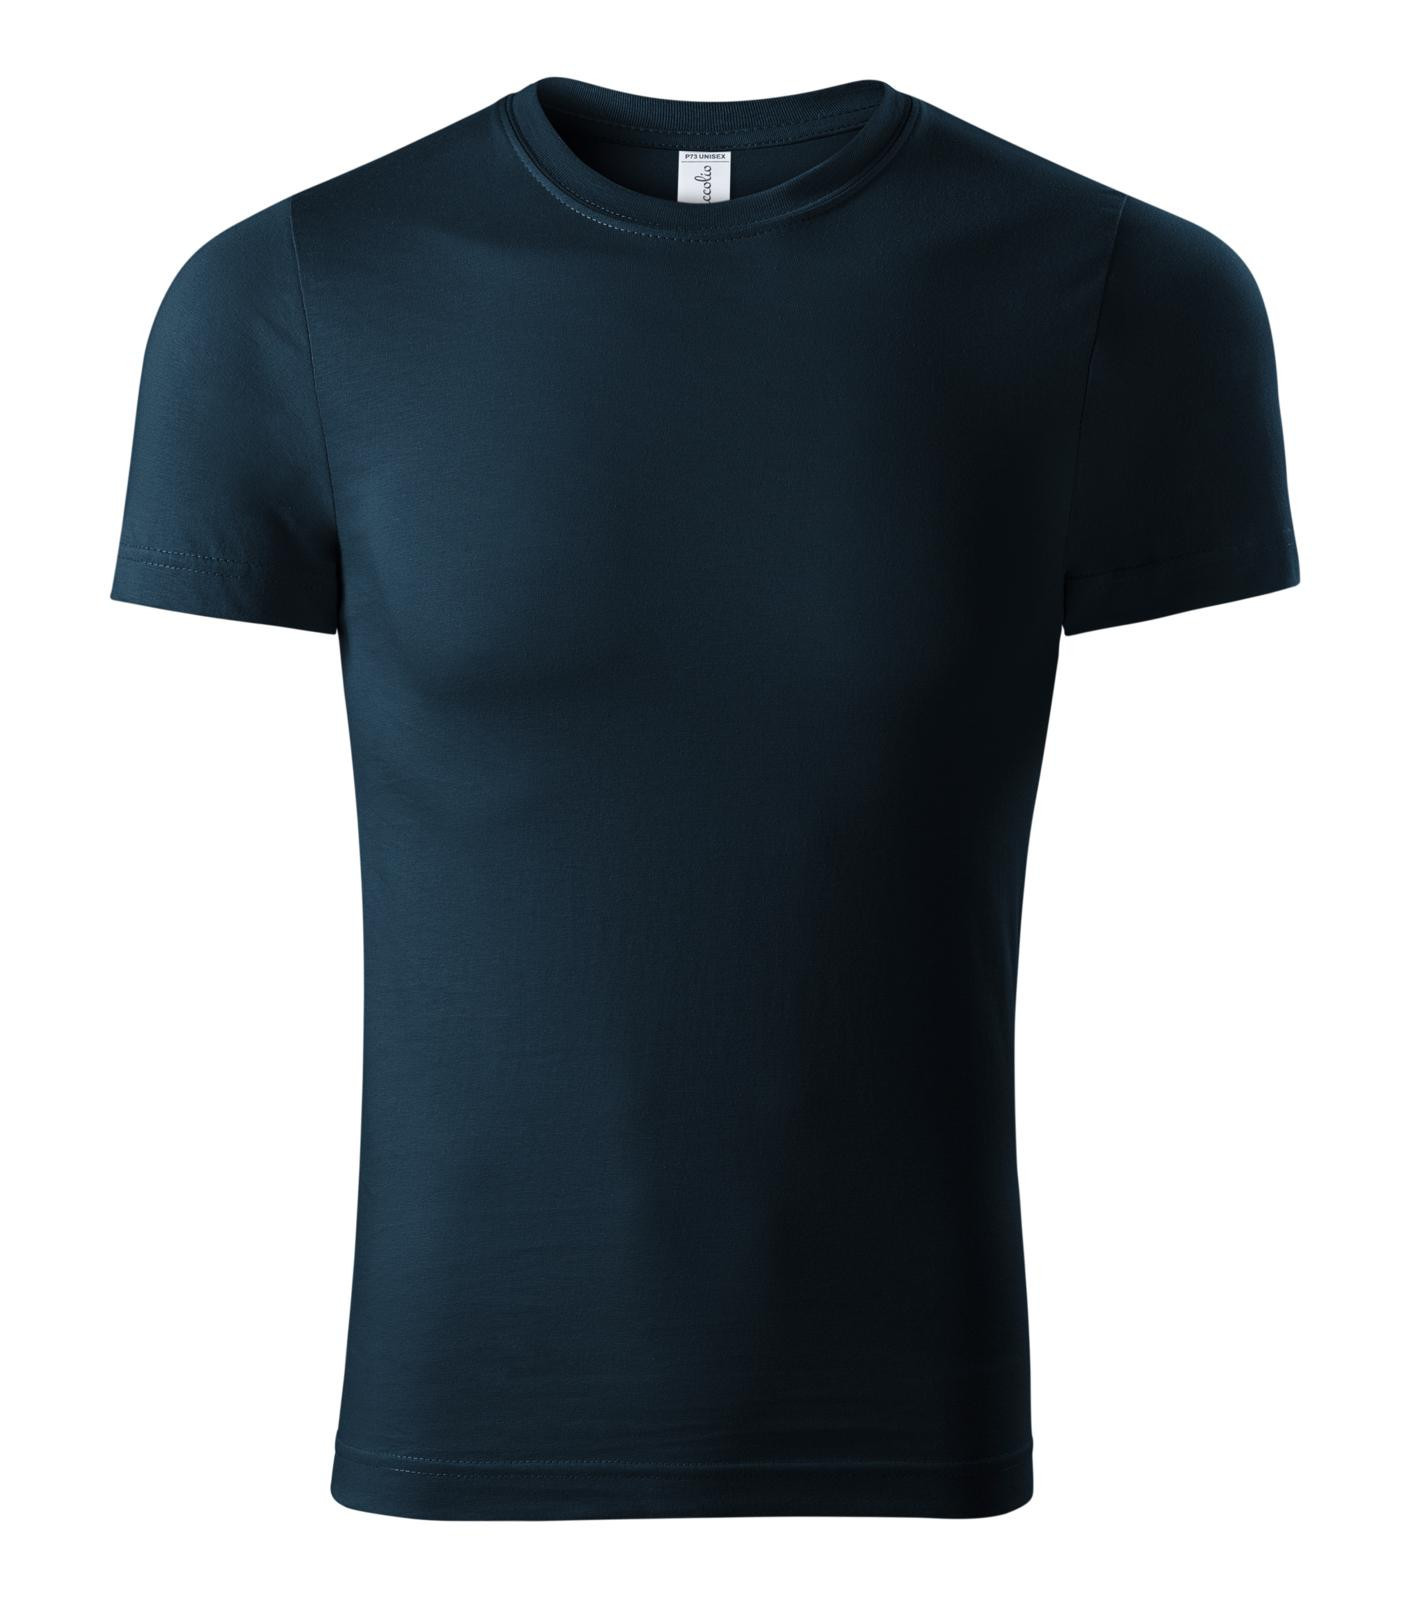 Unisex tričko Piccolio Paint P73 - veľkosť: XS, farba: tmavo modrá